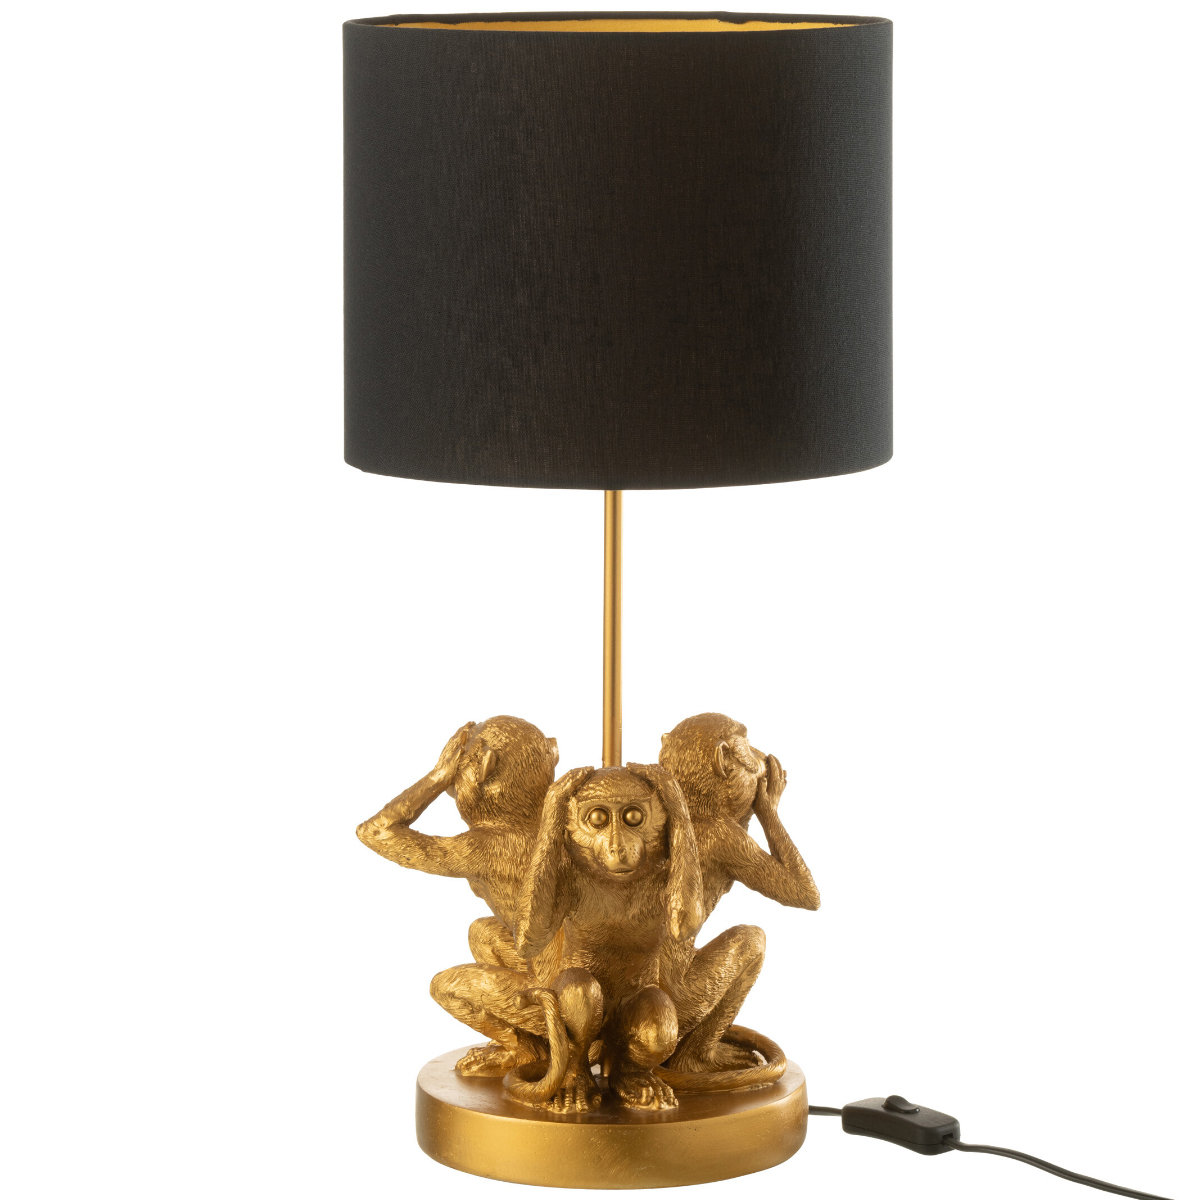 Wise Monkeys lamp in golden resin 53 cm